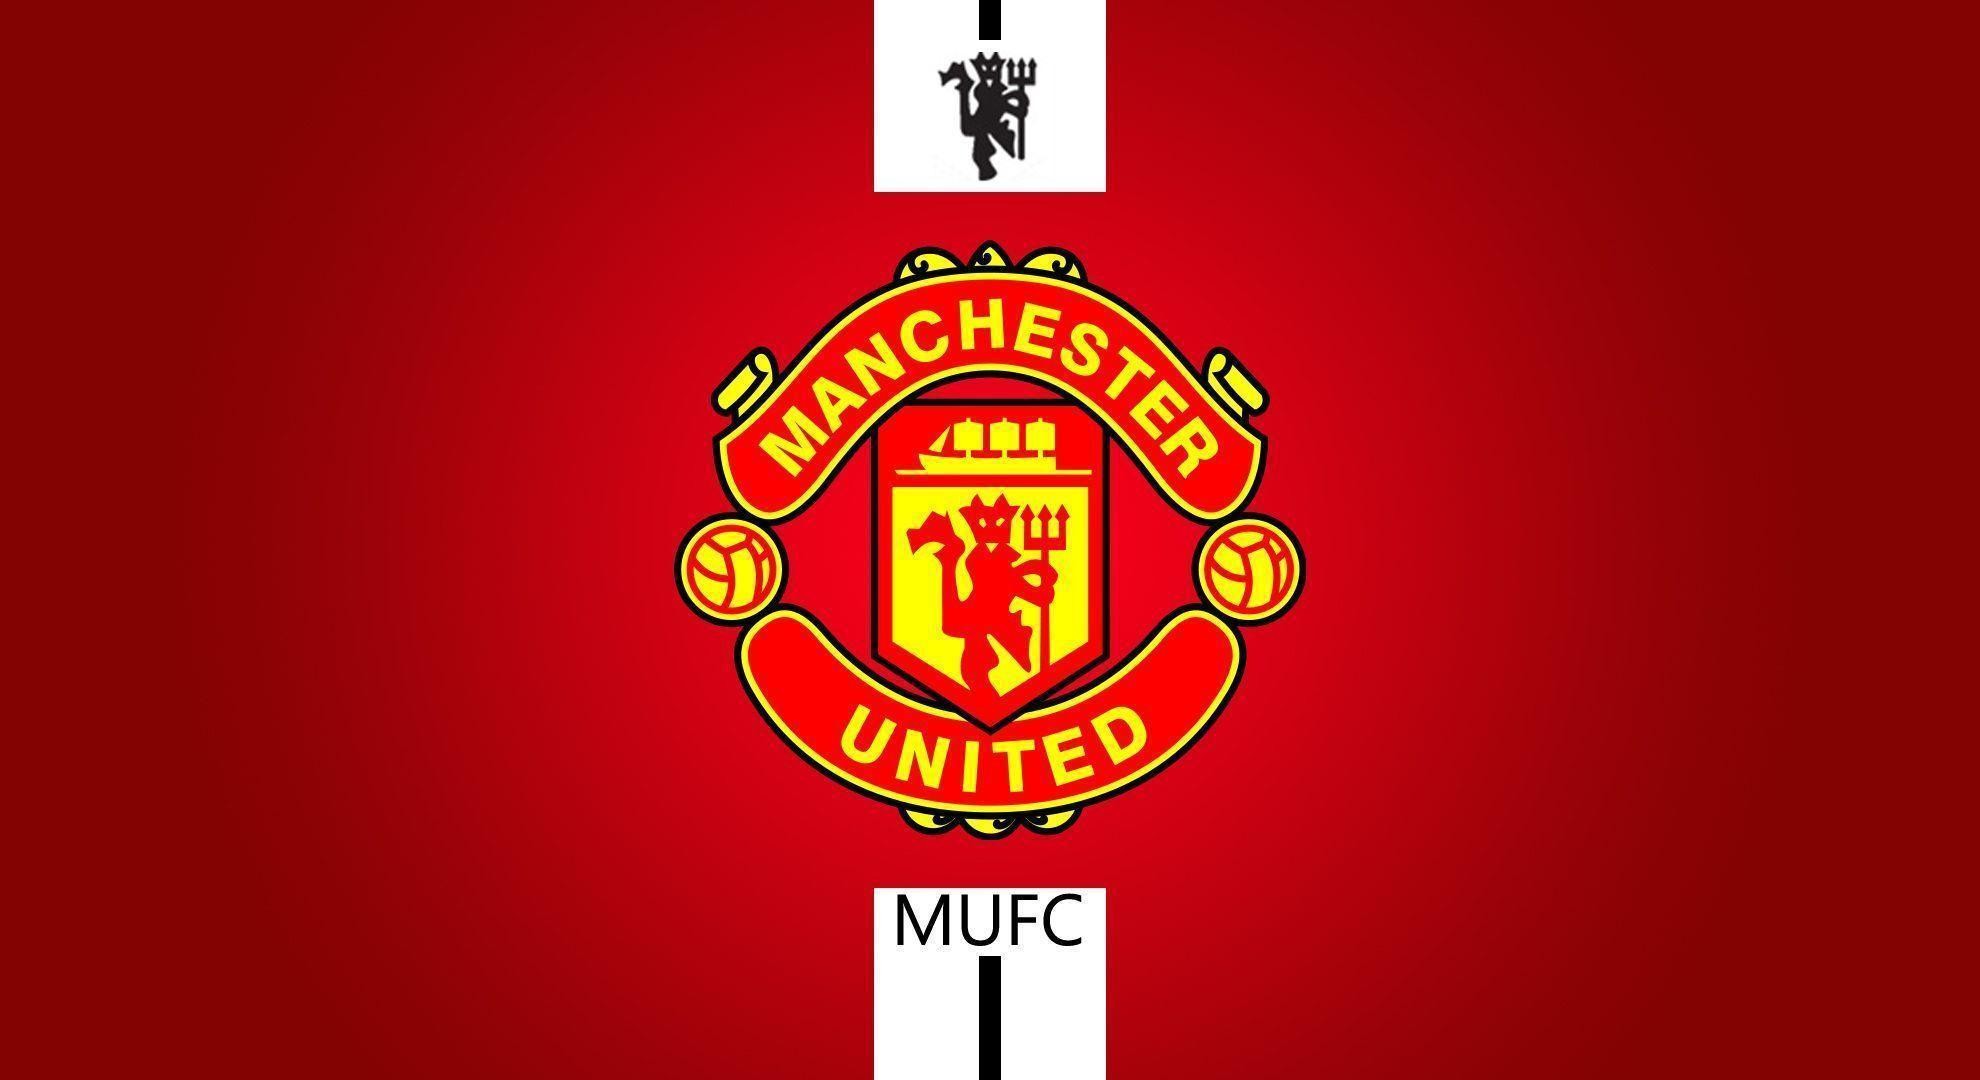 1980x1080 Logo Manchester United 2015 Wallpaper Laptop | Manuwallhd.com